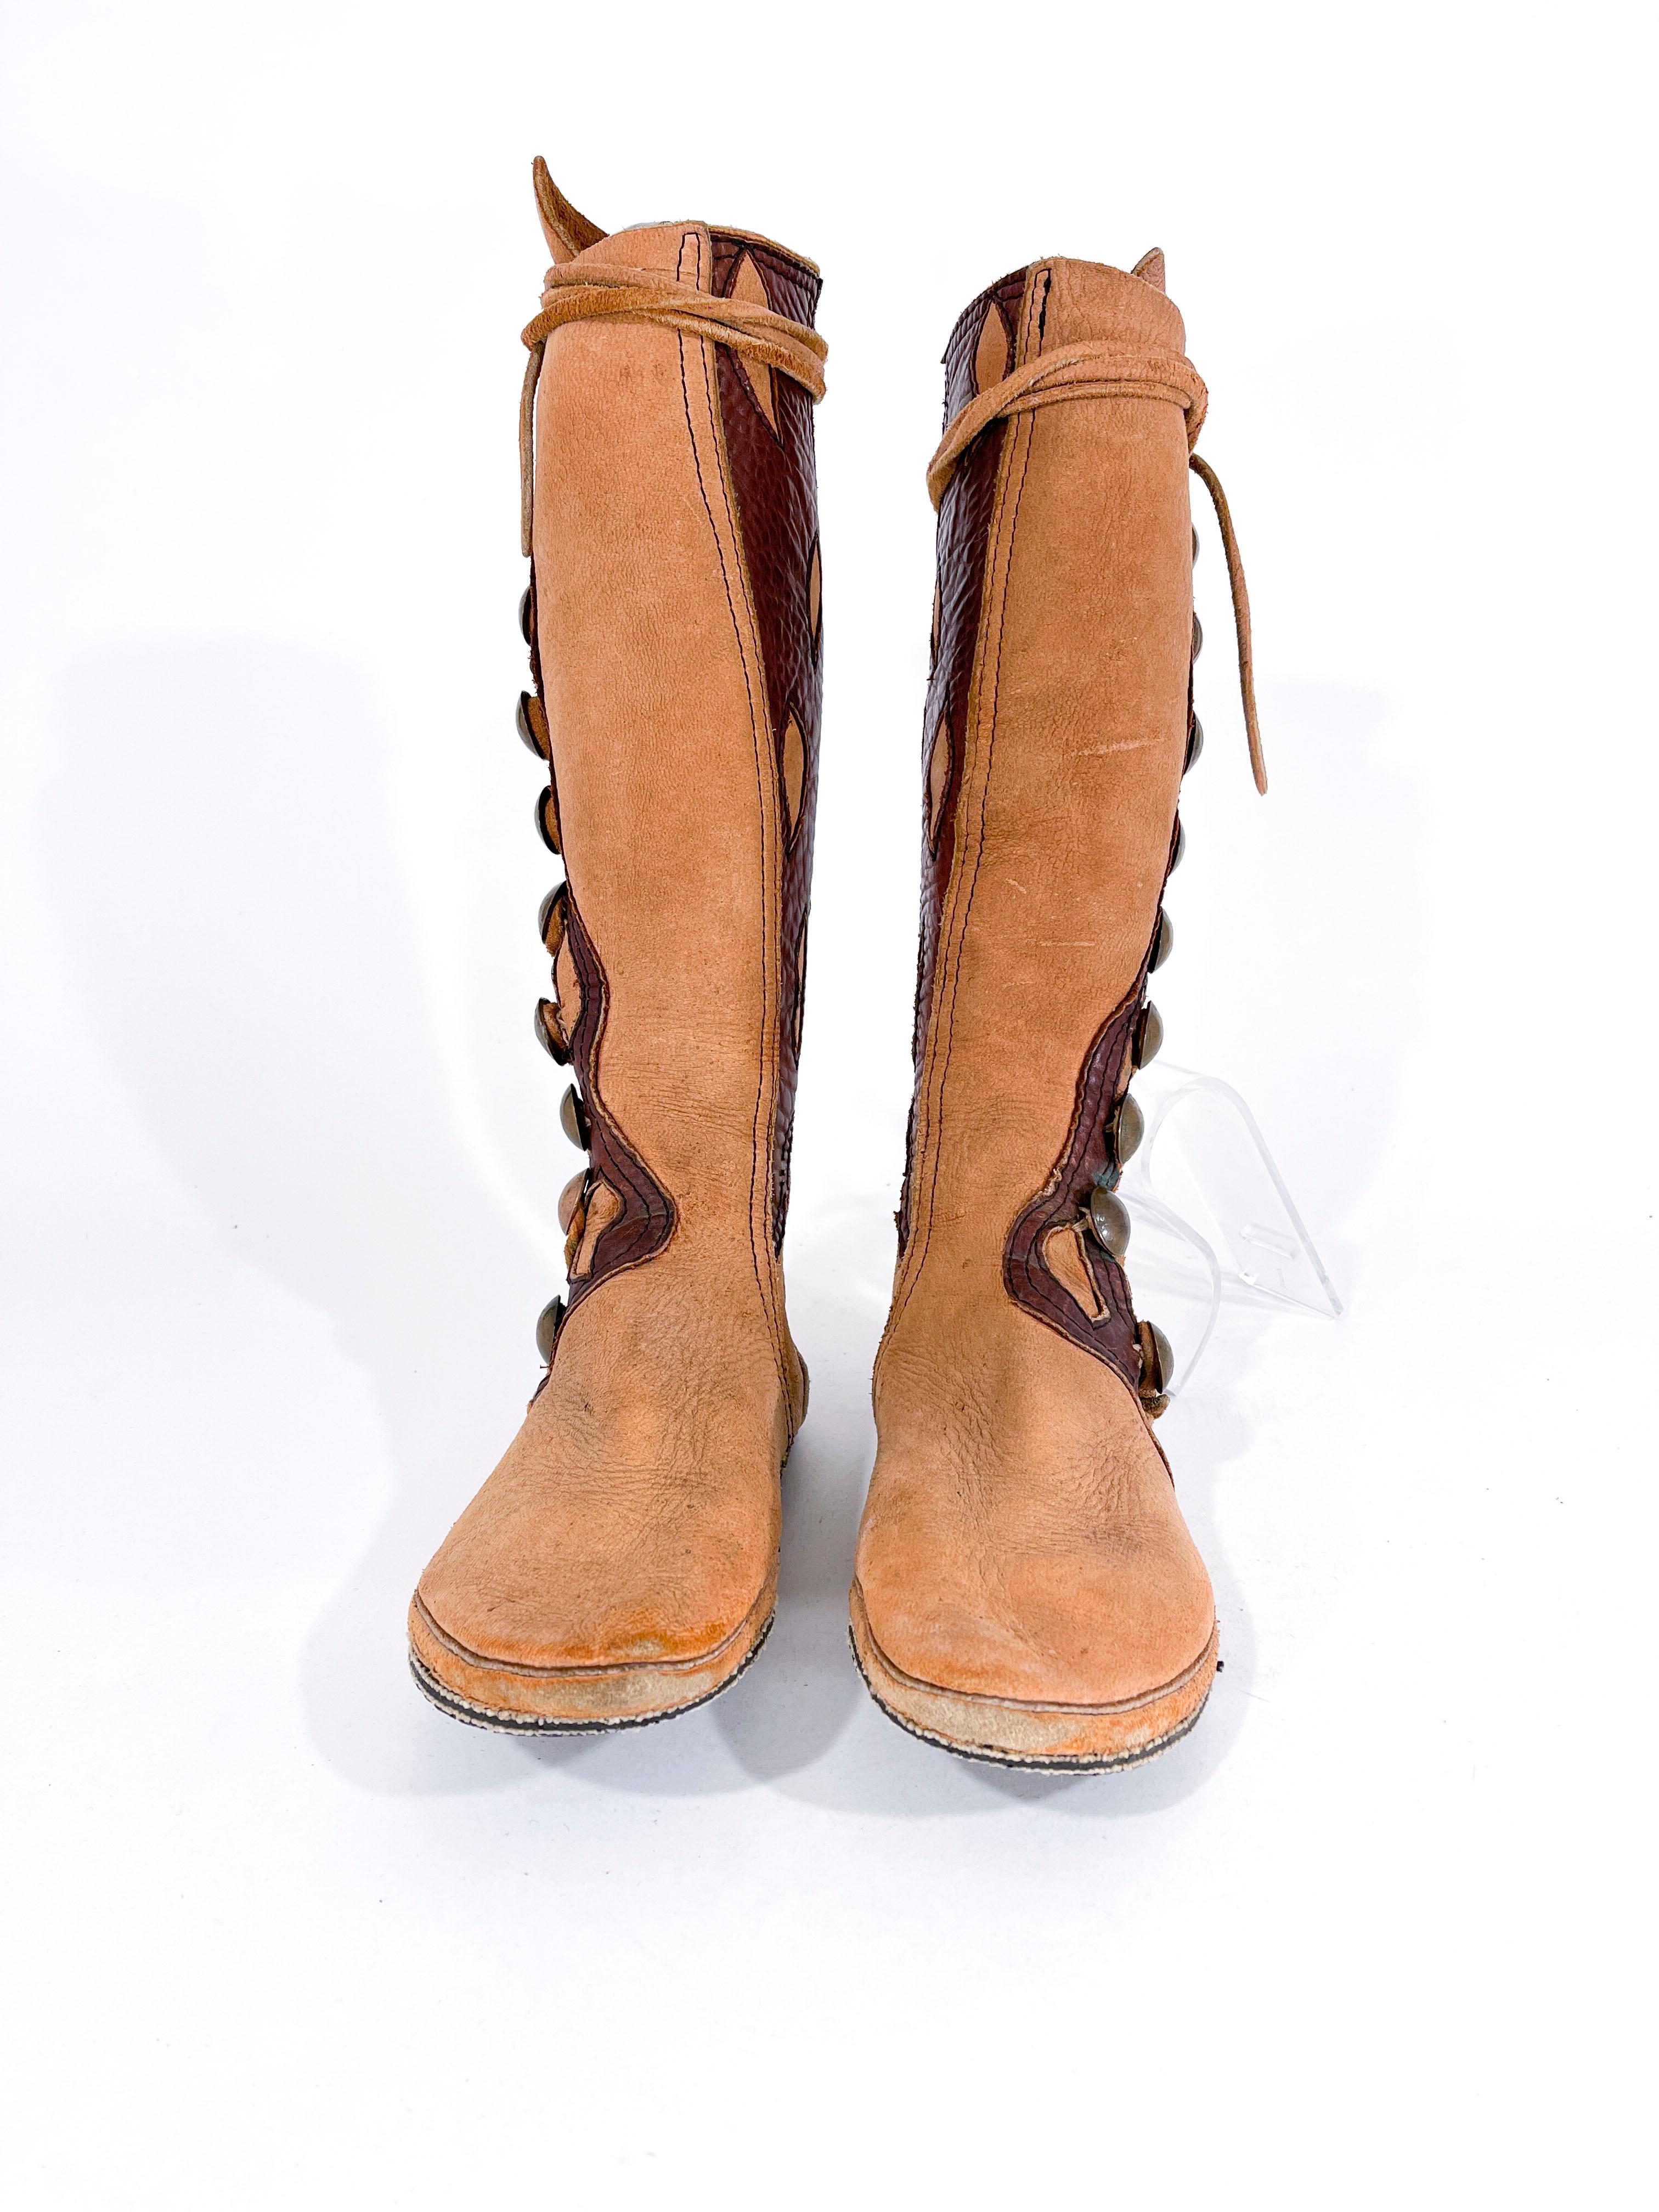 1970er Jahre maßgeschneiderte Elchleder böhmischen Gladiator Stil Stiefel mit kontrastierenden Leder eingefügt Details und Kupfermünze dekorative Tasten. Der Stiefel ist kniehoch. 